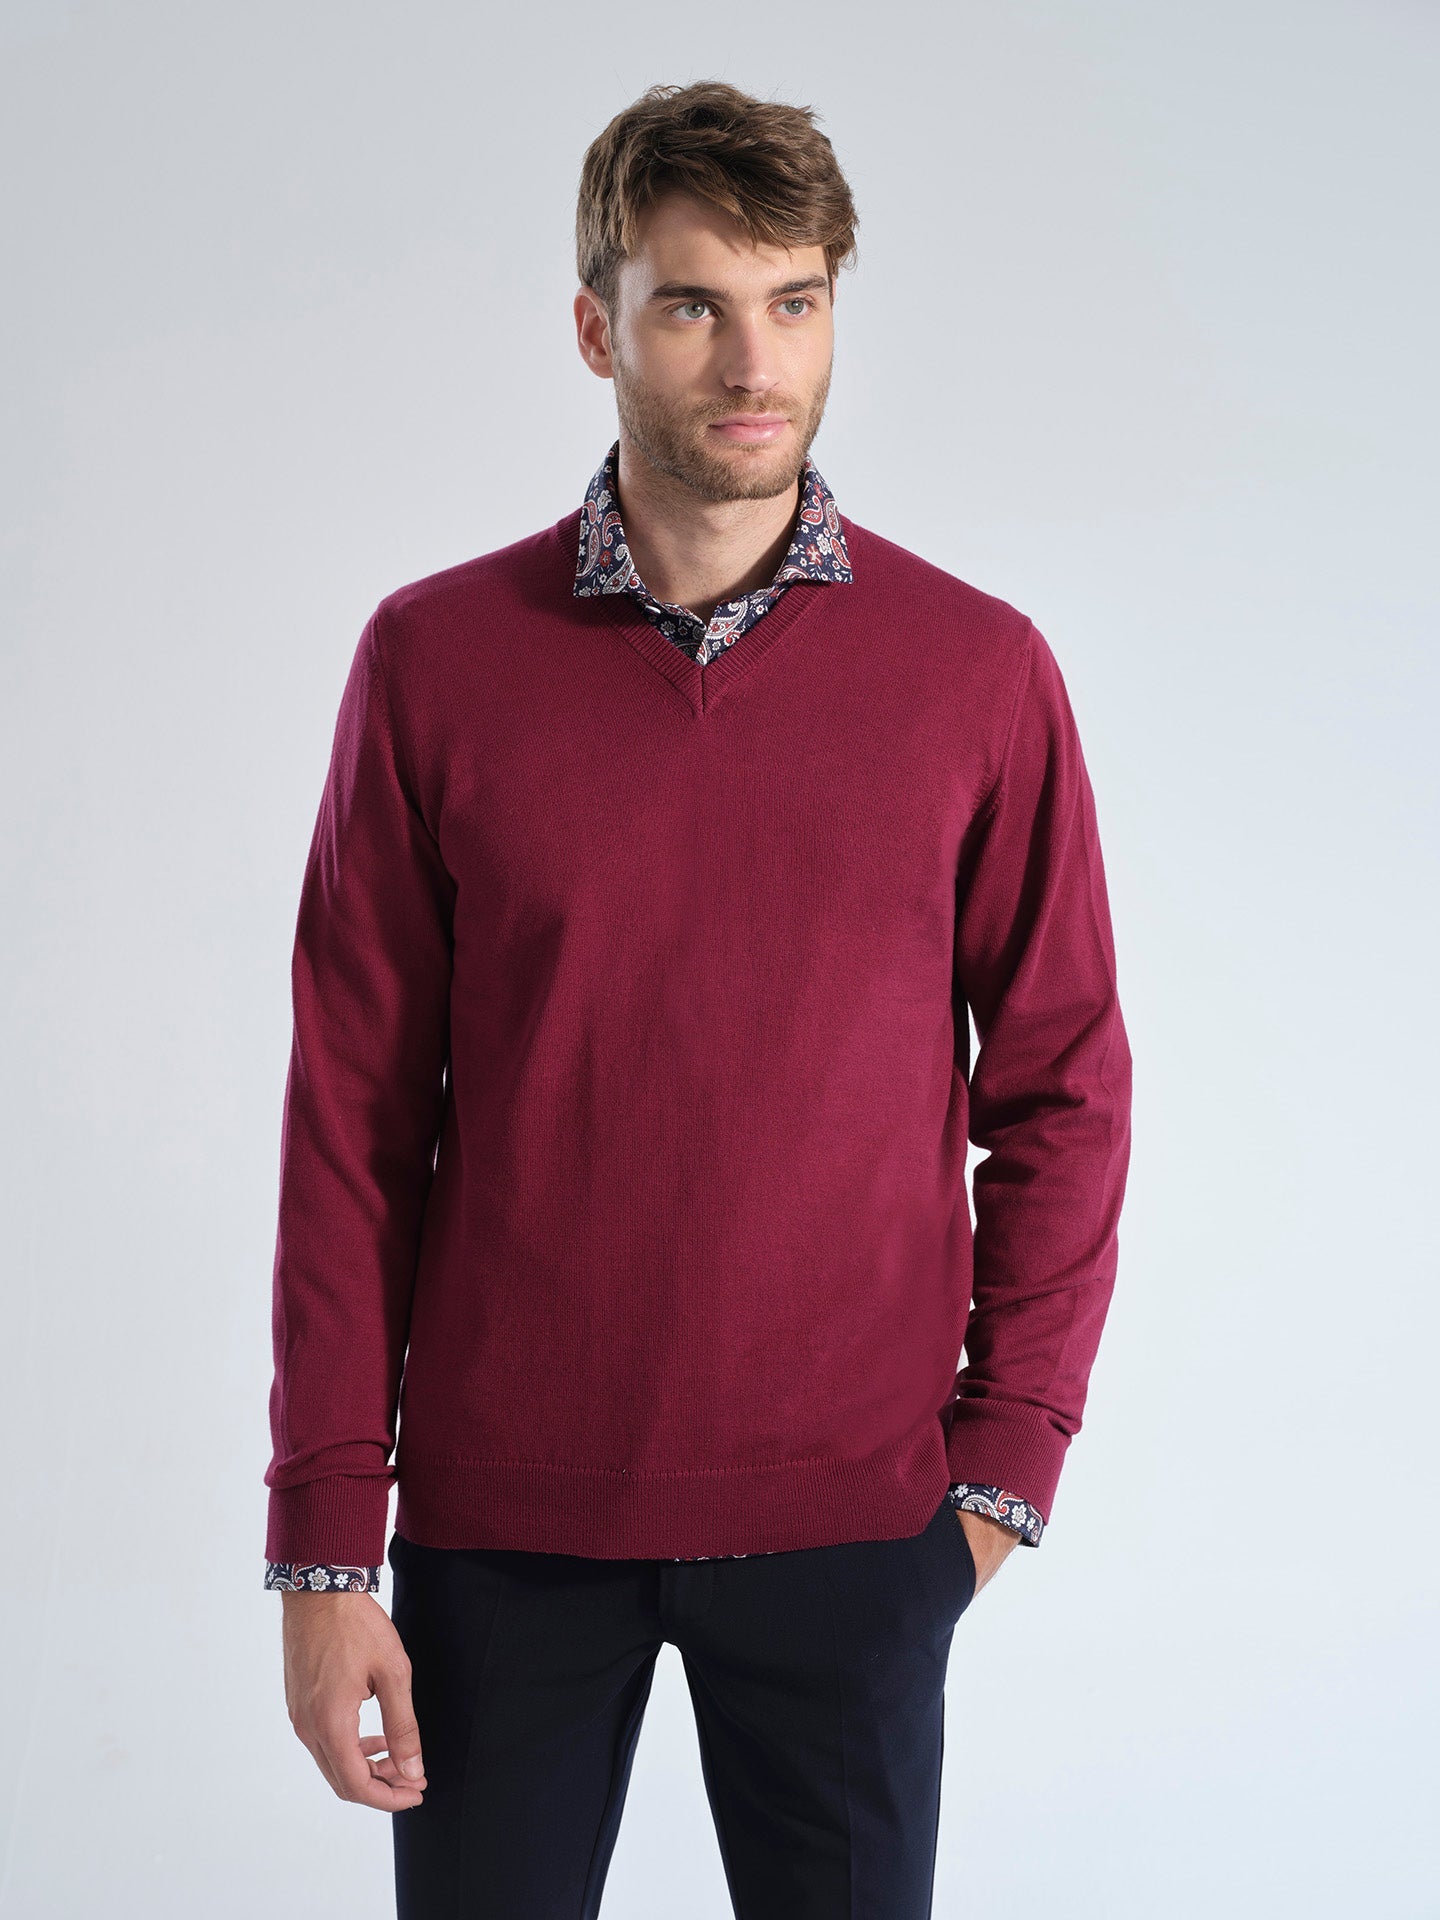 Jersey lana merino cuello pico visón: 79,90 €